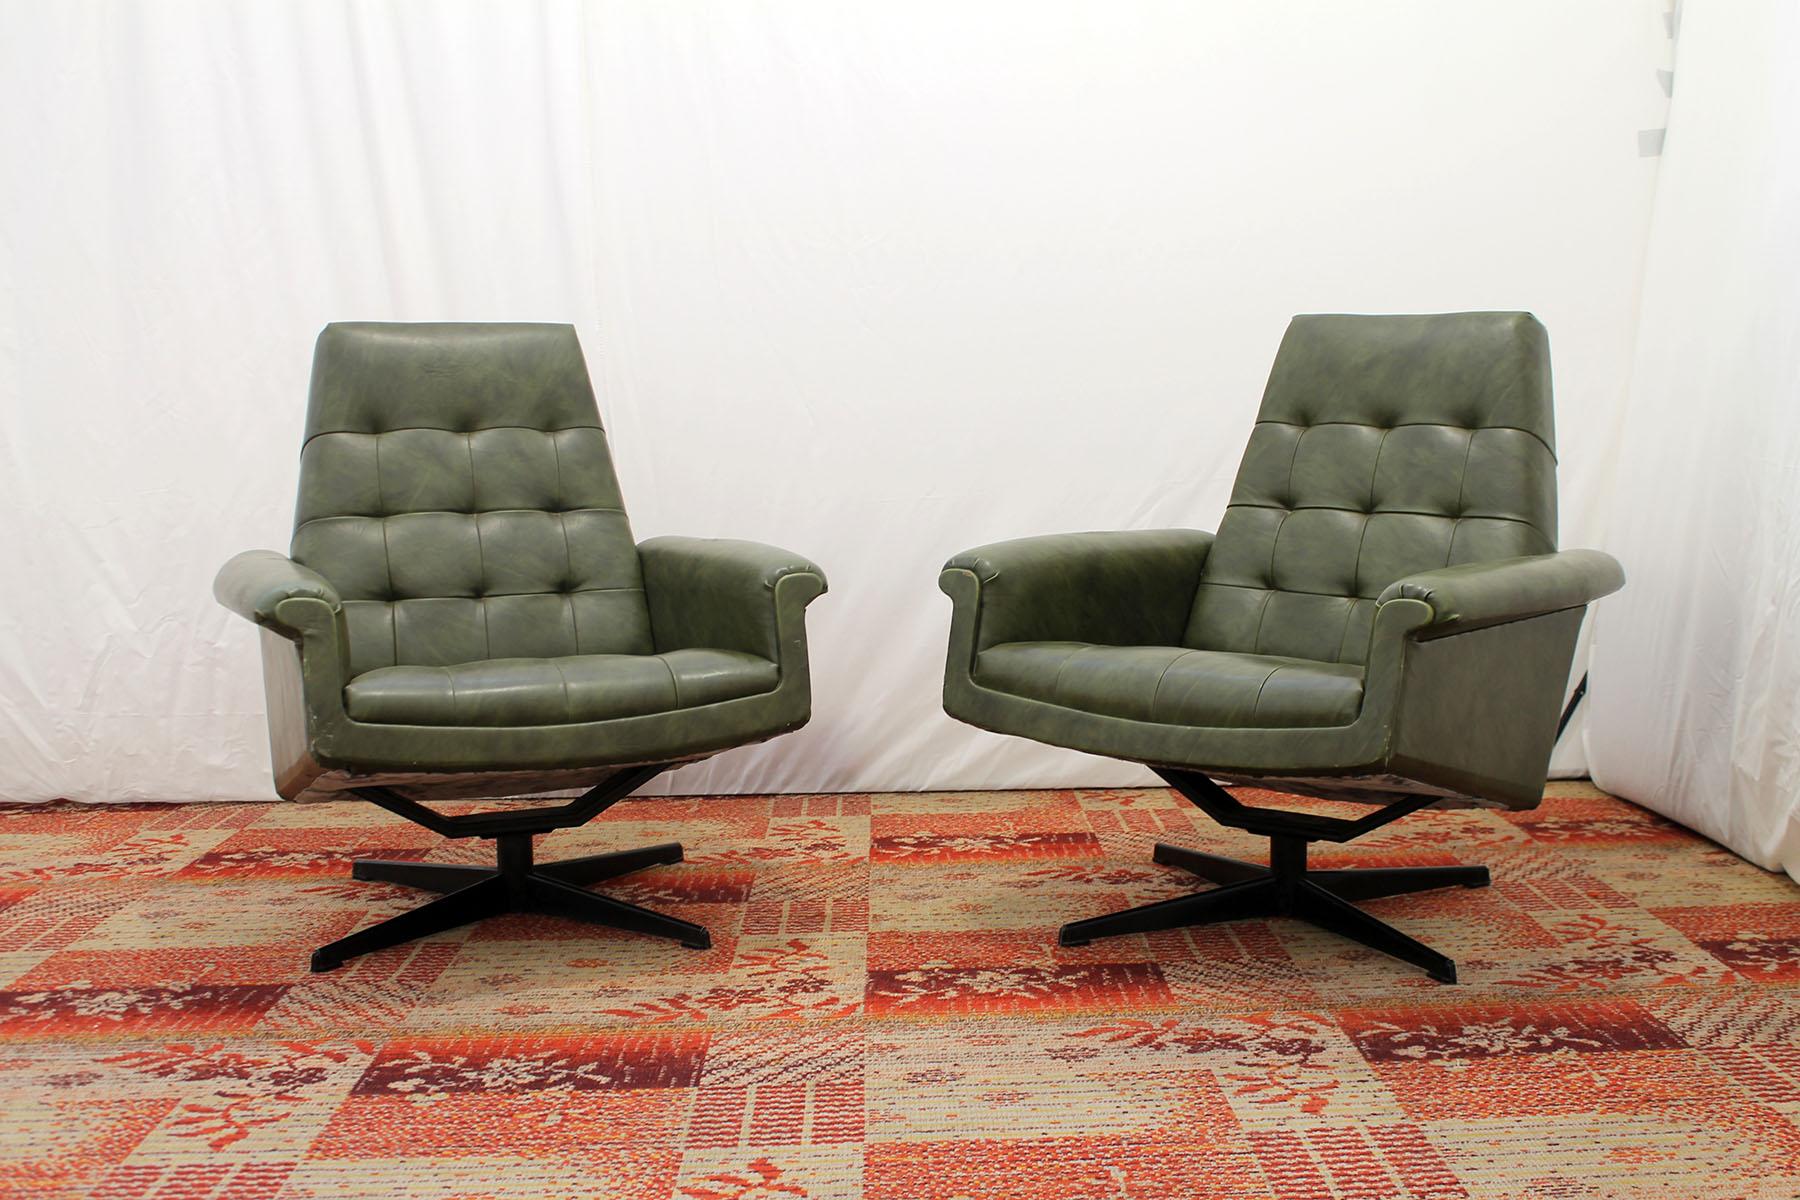 Paire de fauteuils pivotants des années 1970 fabriqués par Up&Up dans l'ancienne Tchécoslovaquie.
Ce type de chaise se caractérise par une construction innovante moulée et élargie.
Ces chaises emblématiques ont une forme légèrement incurvée sur